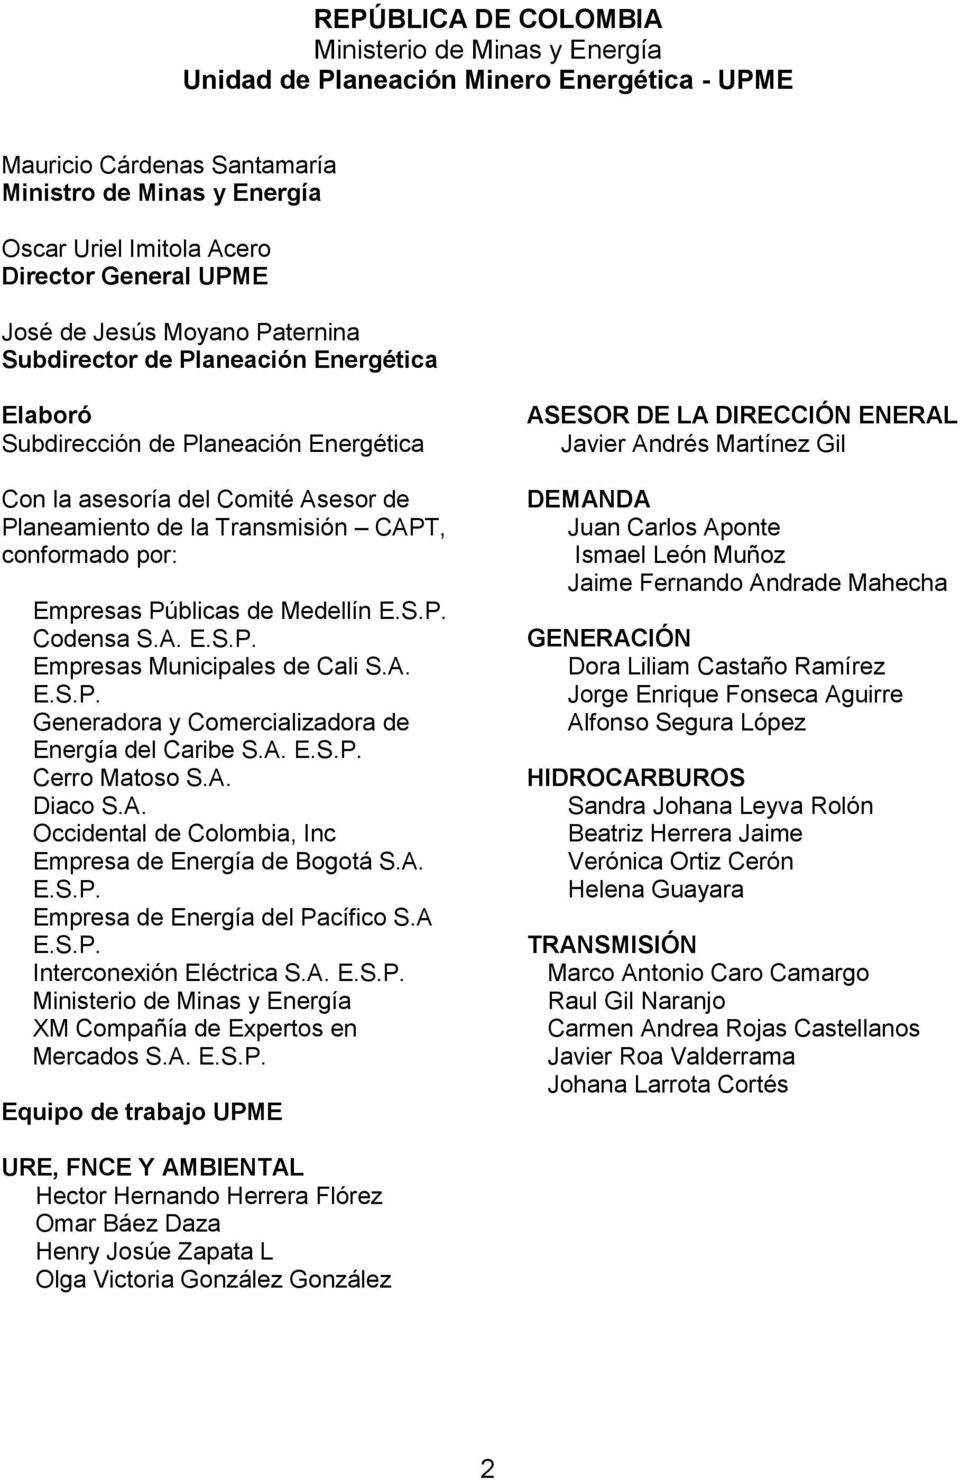 conformado por: Empresas Públicas de Medellín E.S.P. Codensa S.A. E.S.P. Empresas Municipales de Cali S.A. E.S.P. Generadora y Comercializadora de Energía del Caribe S.A. E.S.P. Cerro Matoso S.A. Diaco S.